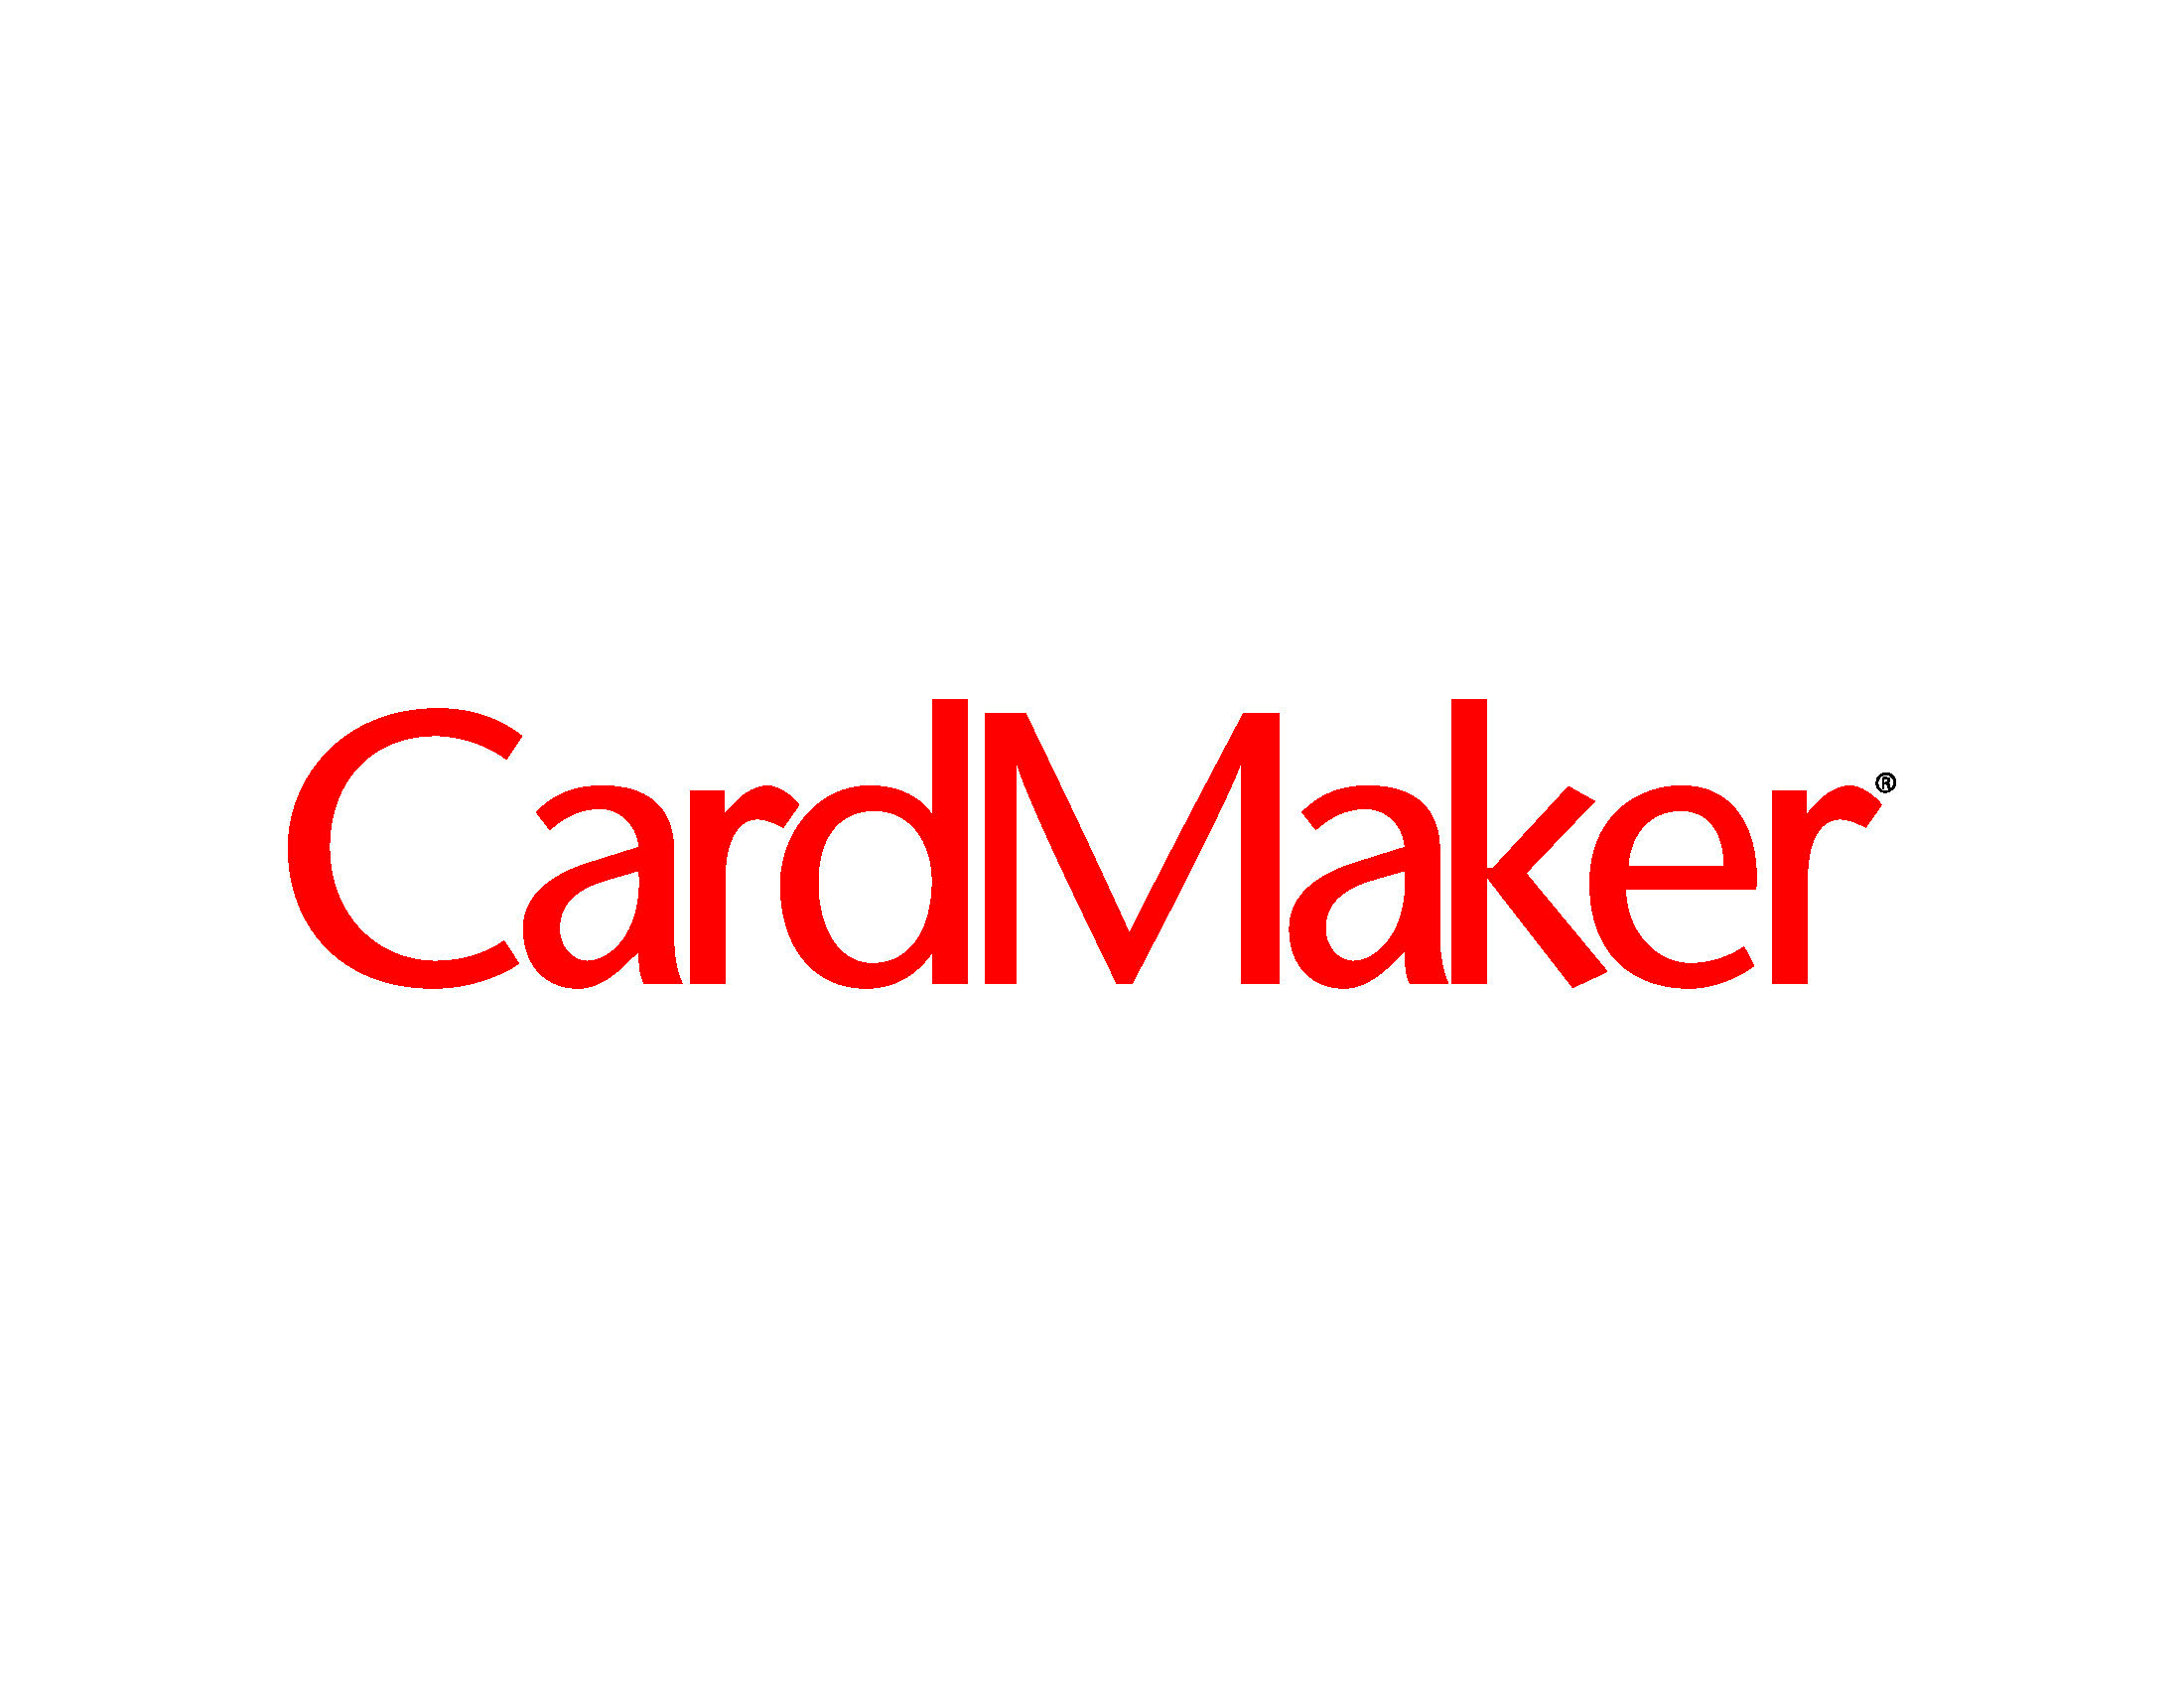 Card Maker logo